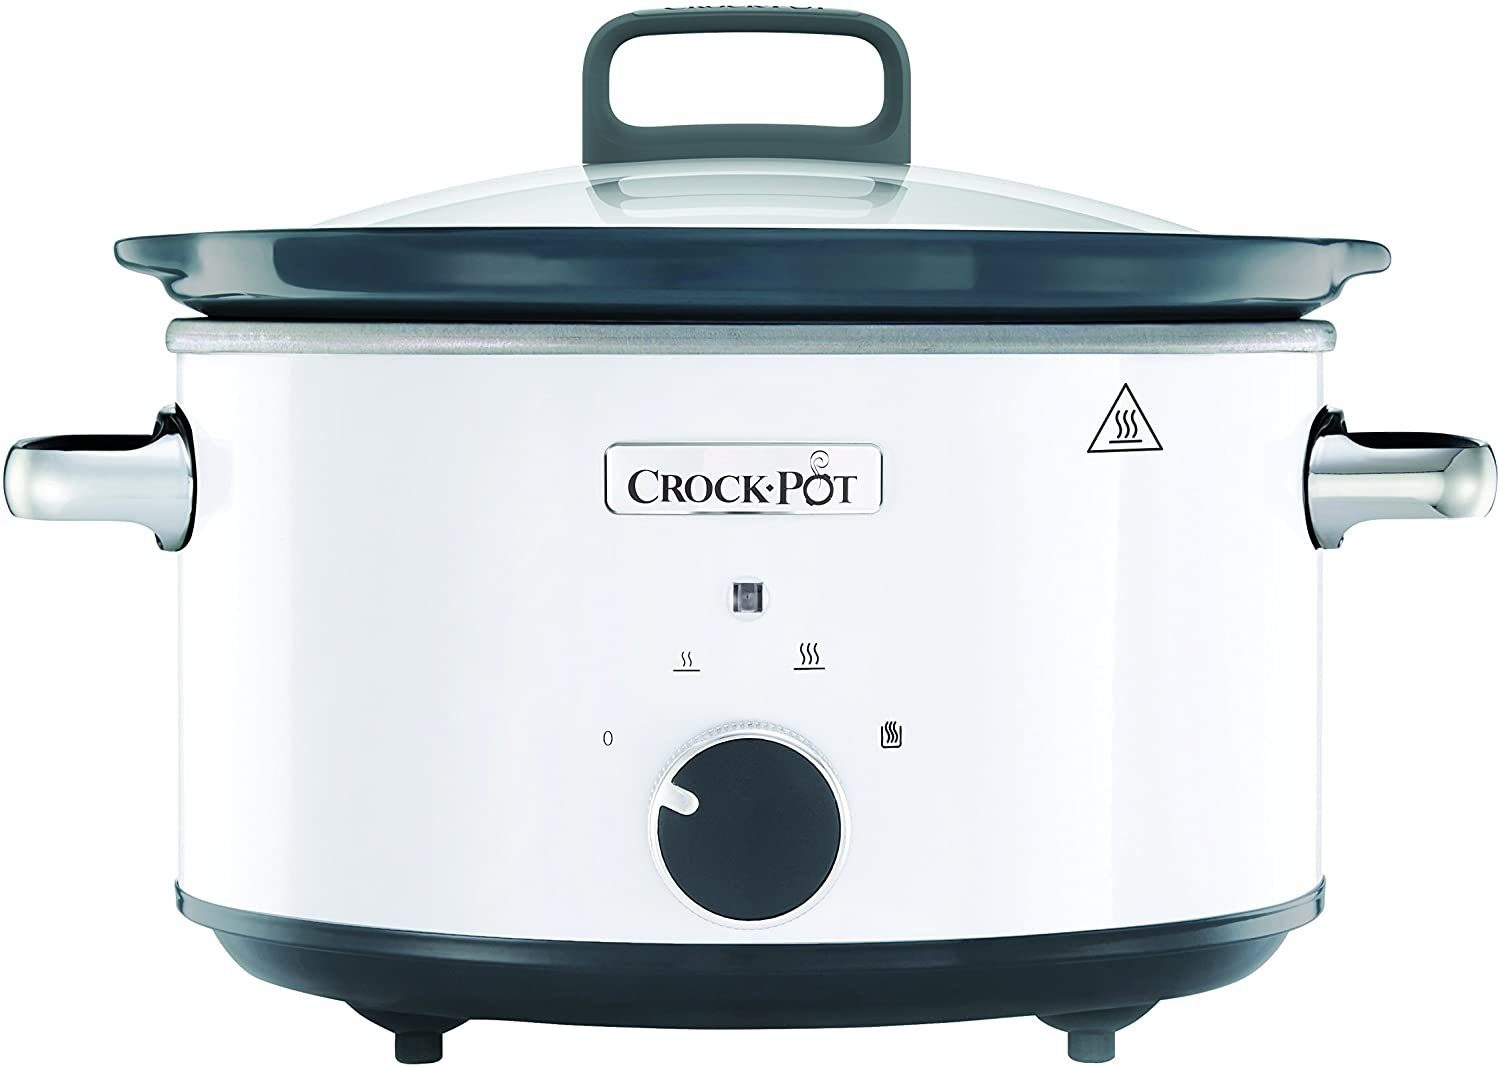 Weiß, Elektrische Pfanne CSC030X 3.5 Warmhaltefunktion liters, Crock-Pot Schongarer, Crock-Pot